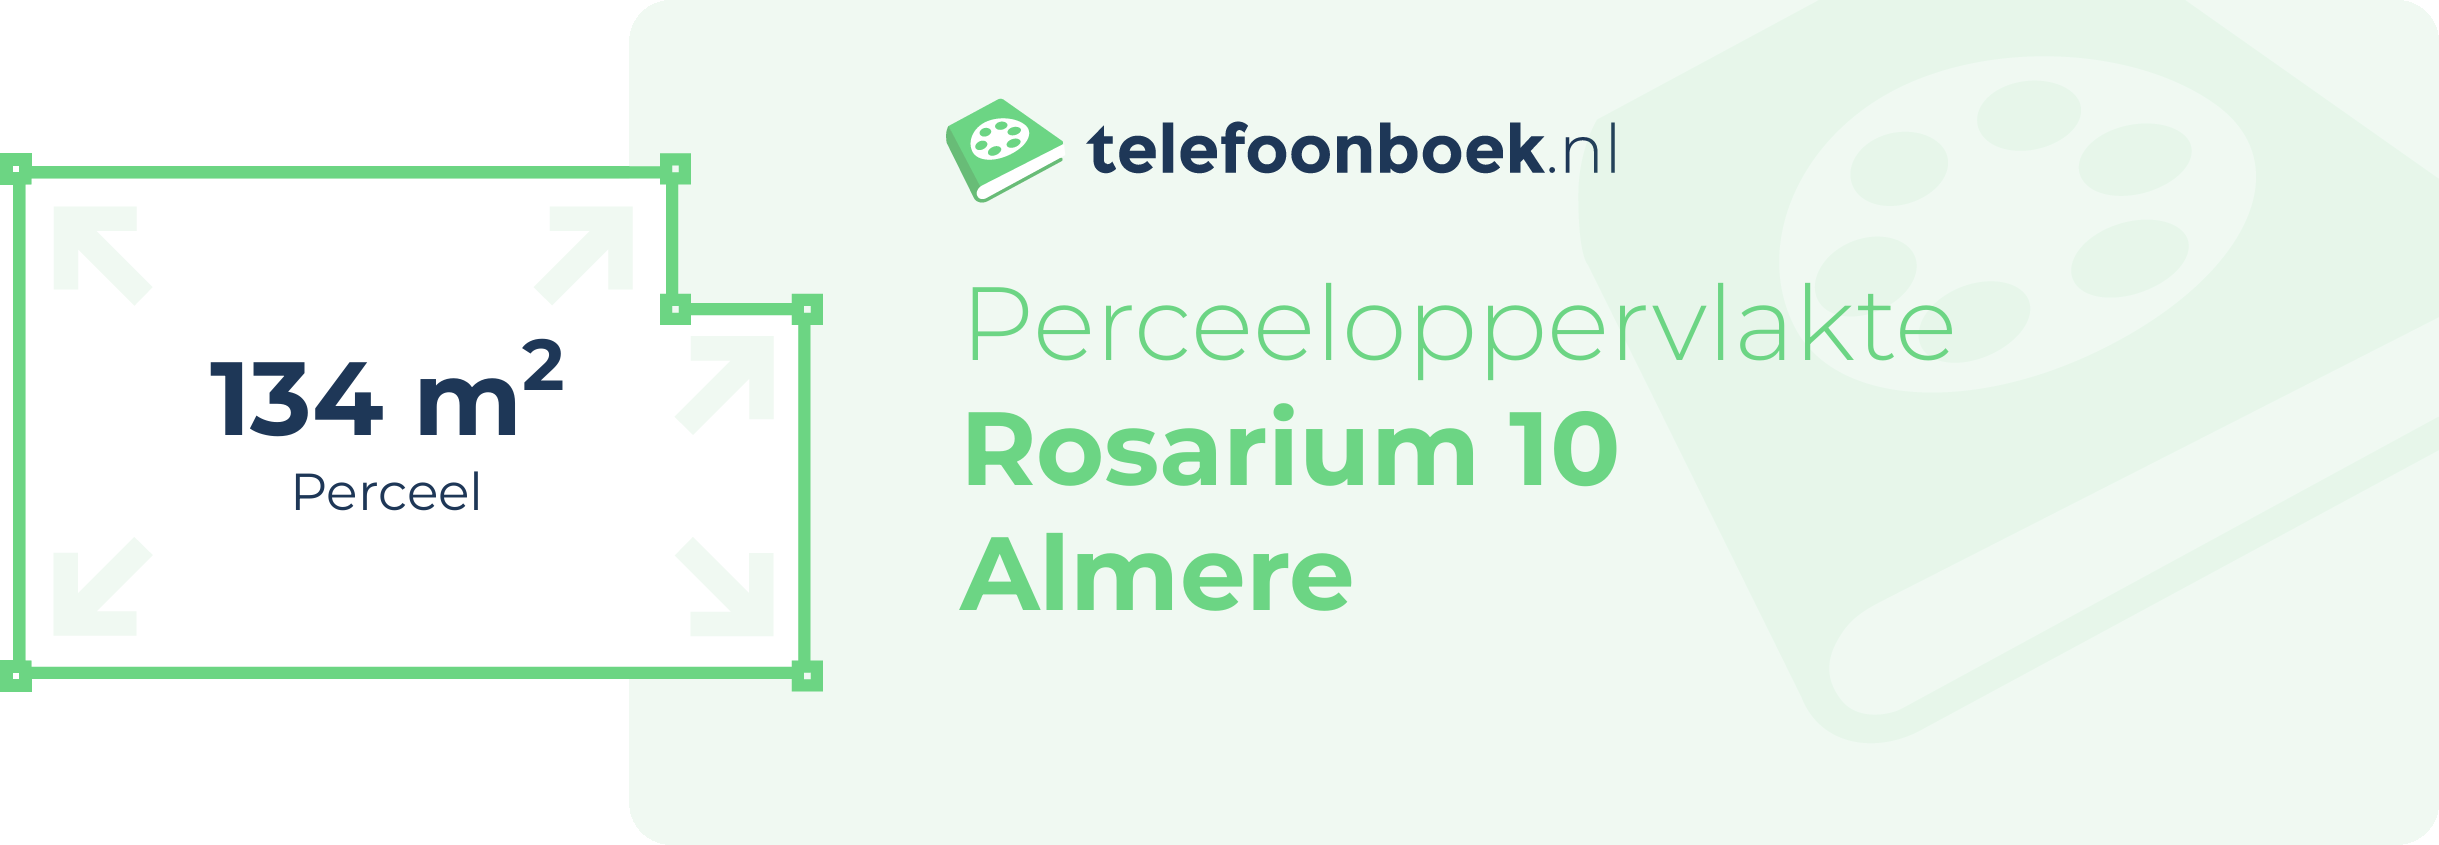 Perceeloppervlakte Rosarium 10 Almere